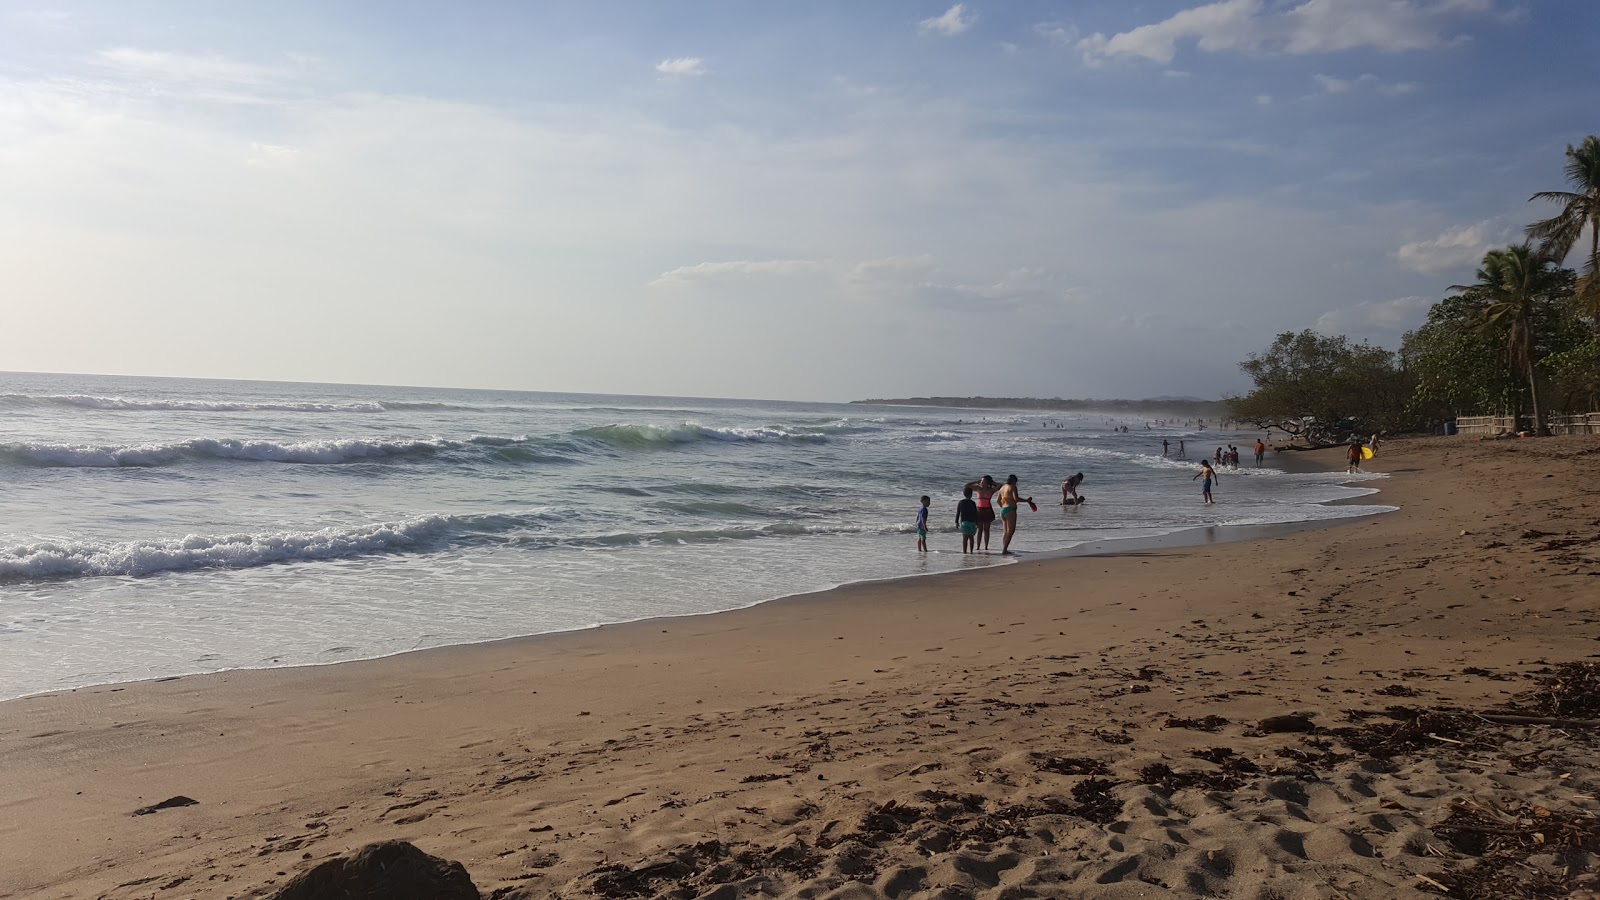 Playa Lagartillo'in fotoğrafı geniş plaj ile birlikte